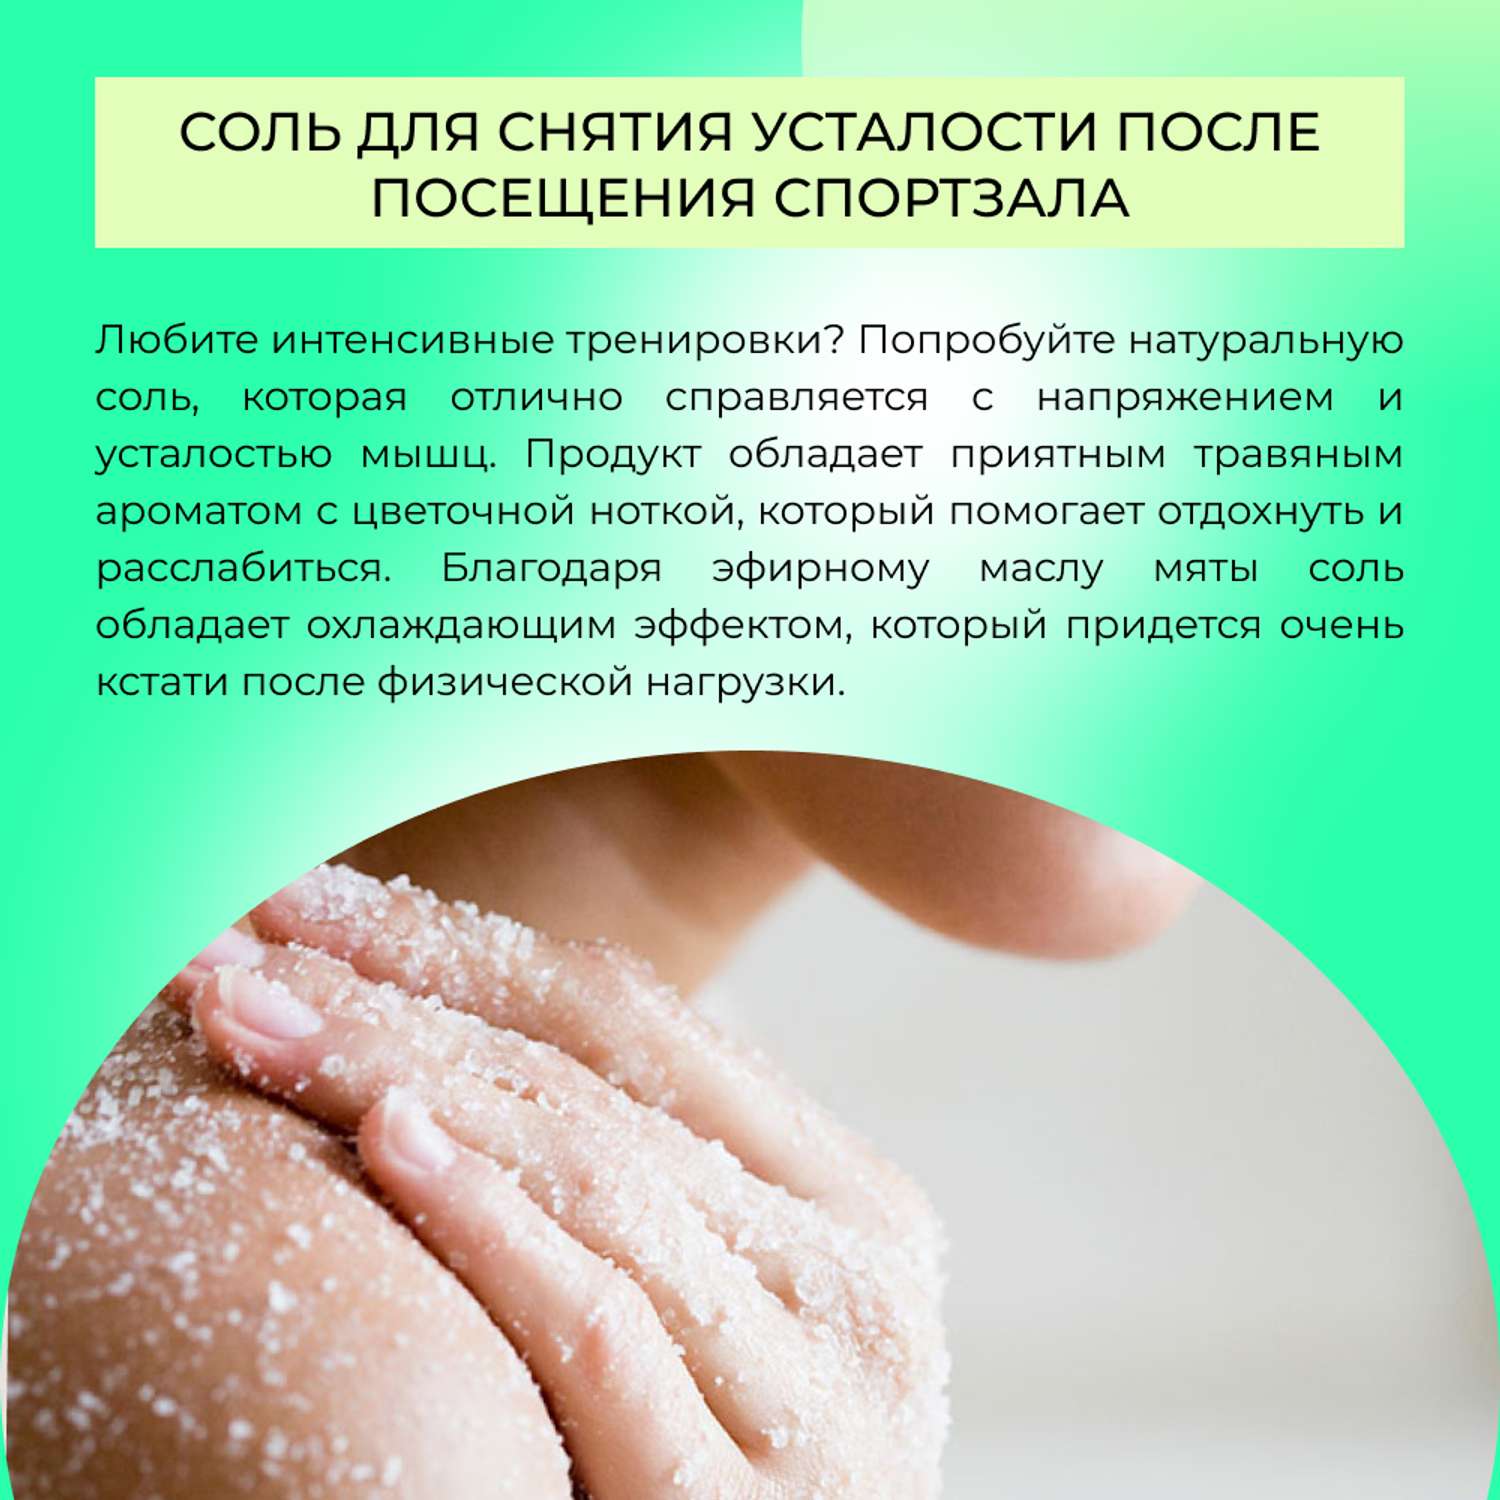 Соль для ванны Siberina натуральная «Снятие усталости и мышечного напряжения» морская расслабляющая 600 г - фото 6